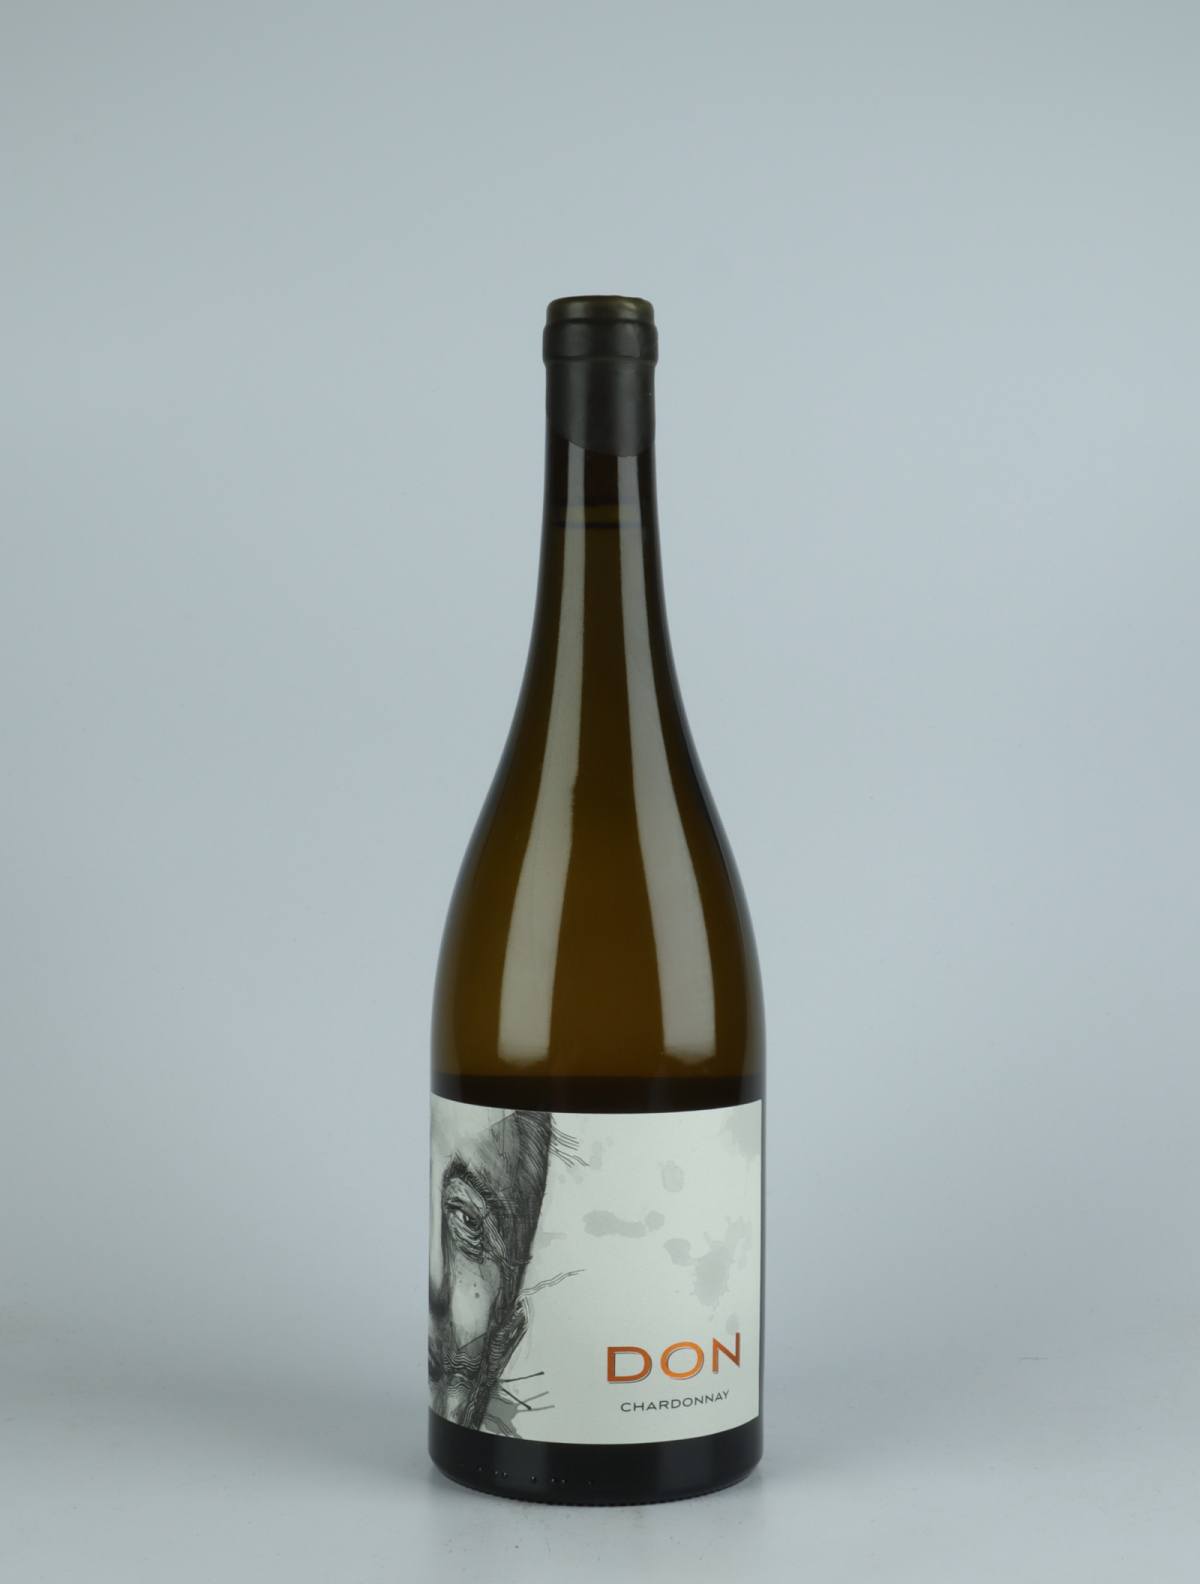 En flaske 2020 Top Block Chardonnay Hvidvin fra Don, Nelson i New Zealand